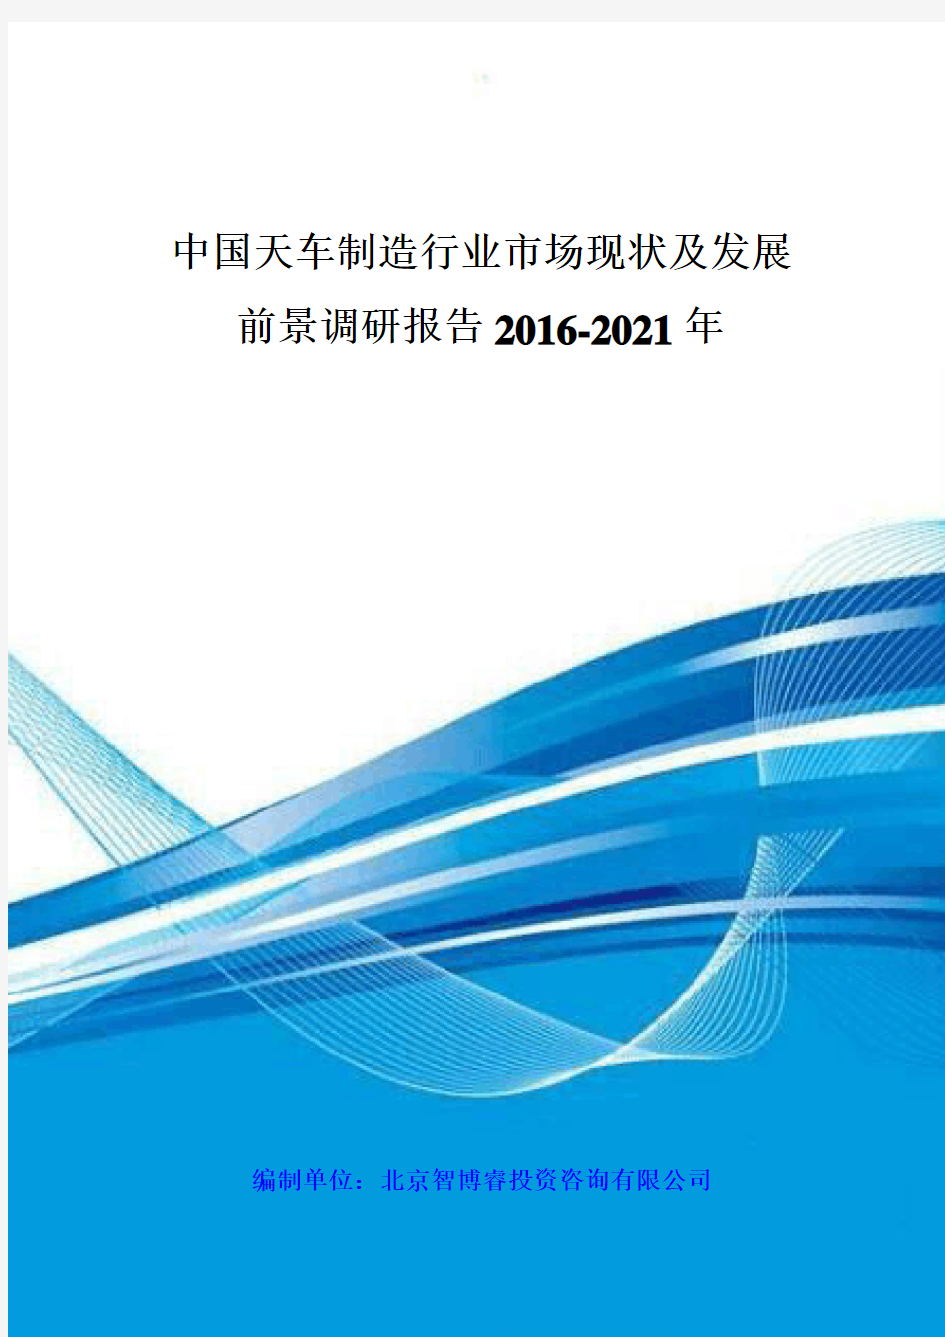 中国天车制造行业市场现状及发展前景调研报告 